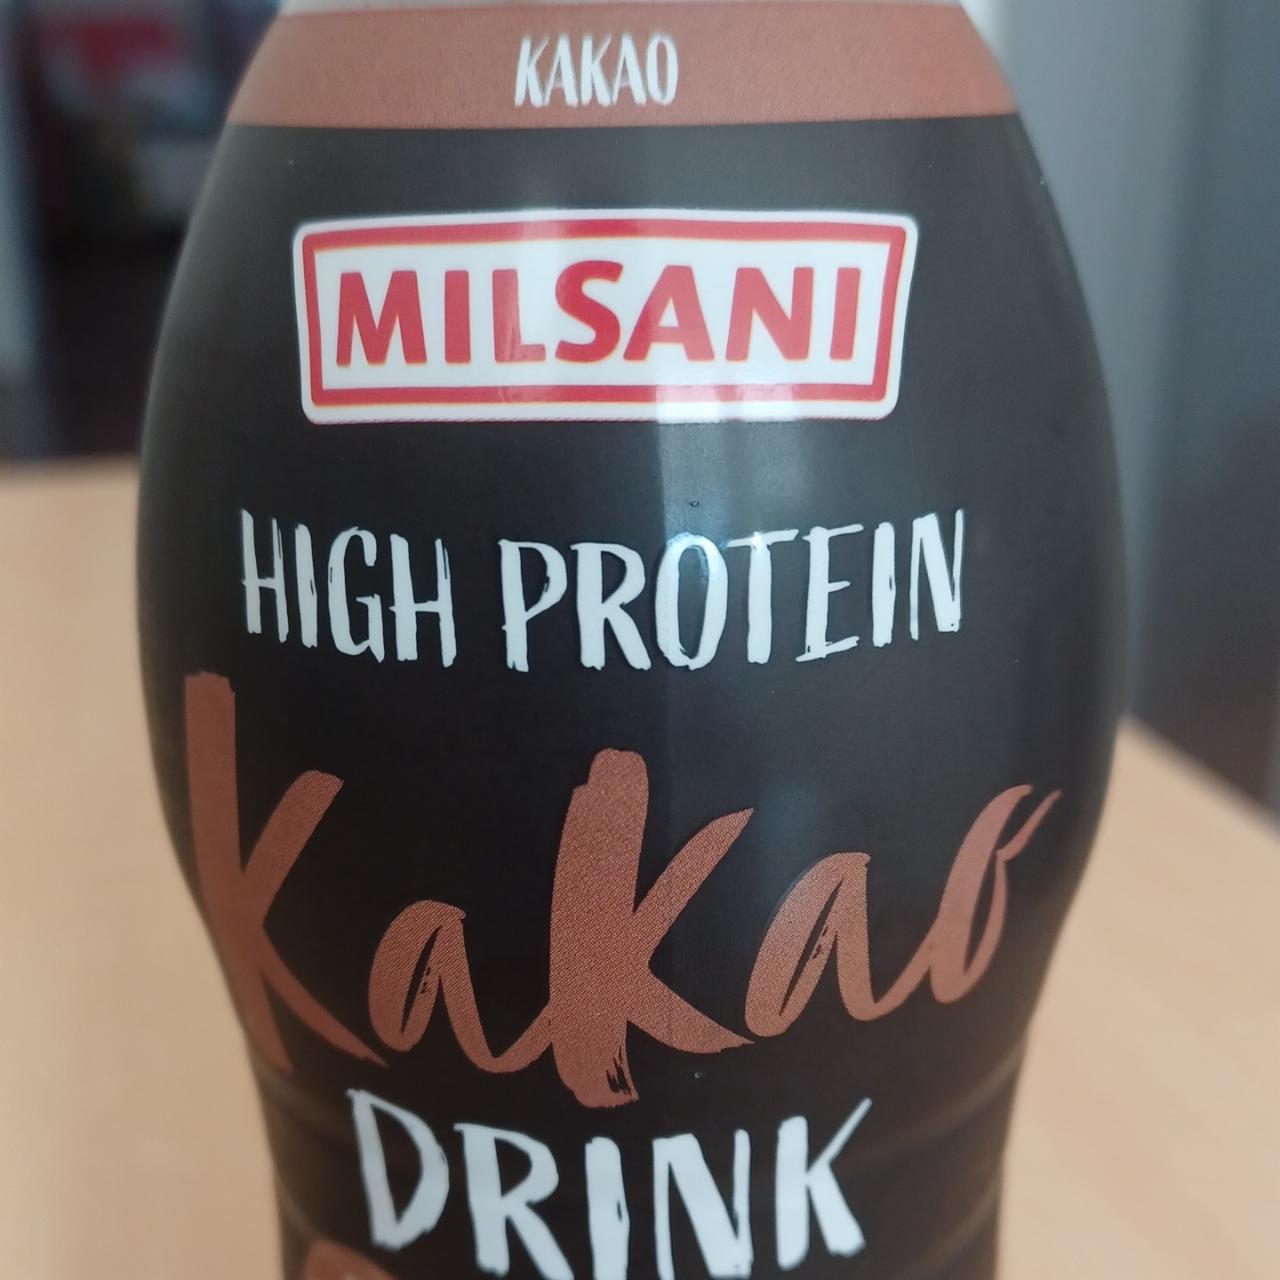 Фото - High protein Kakao drink Milsani